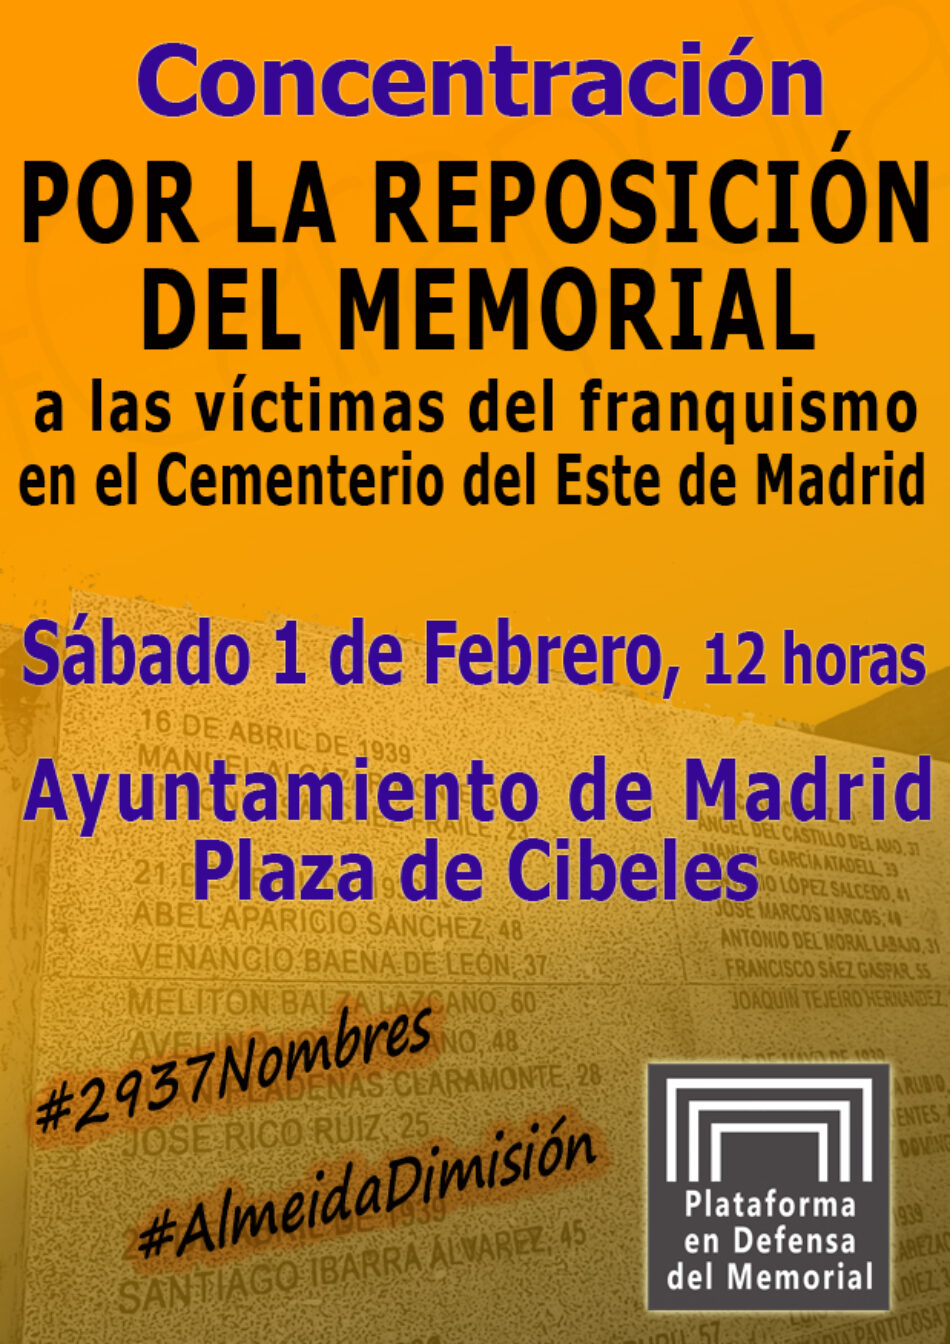 Convocan concentración para exigir la reposición del Memorial del Cementerio del Este de Madrid: 1 de febrero